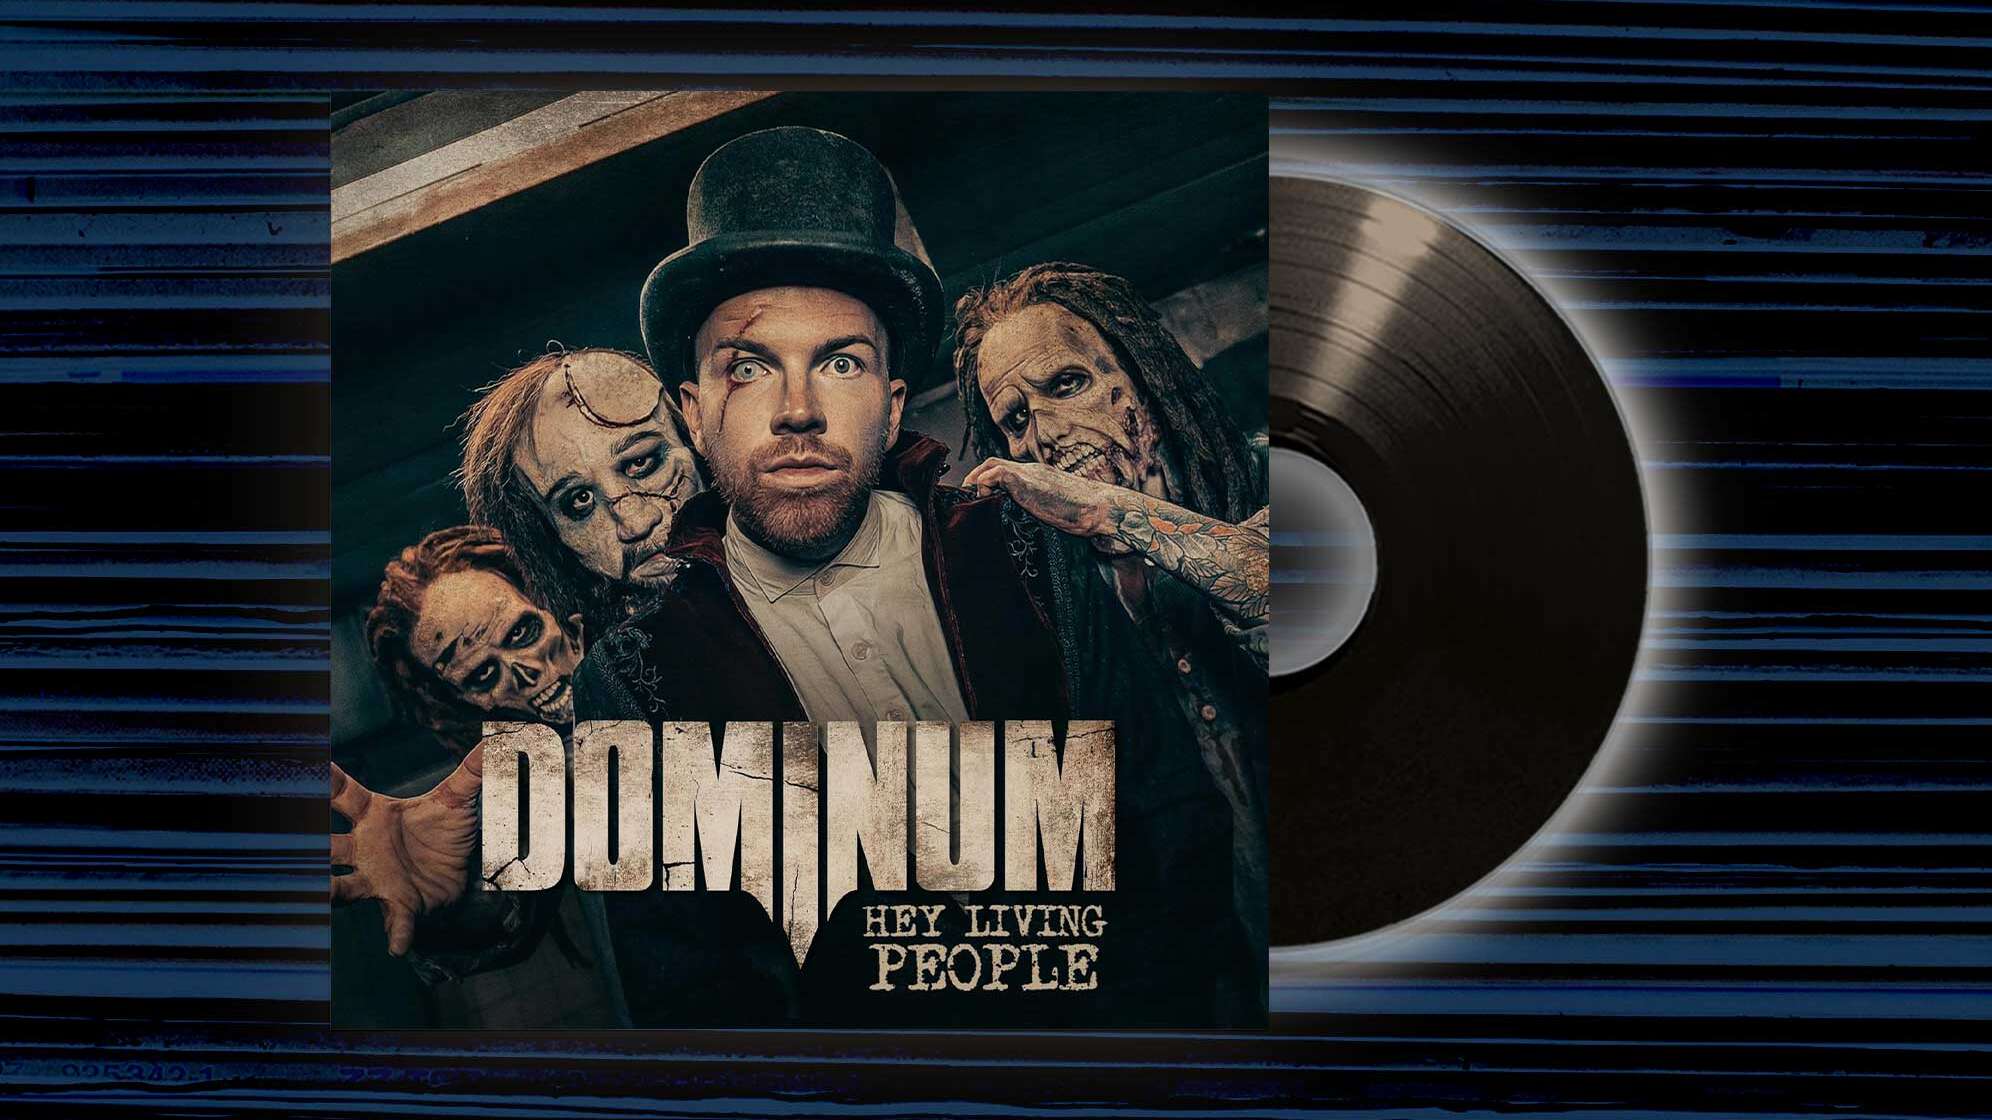 Das Albumcover von "Hey Living People" von Dominium